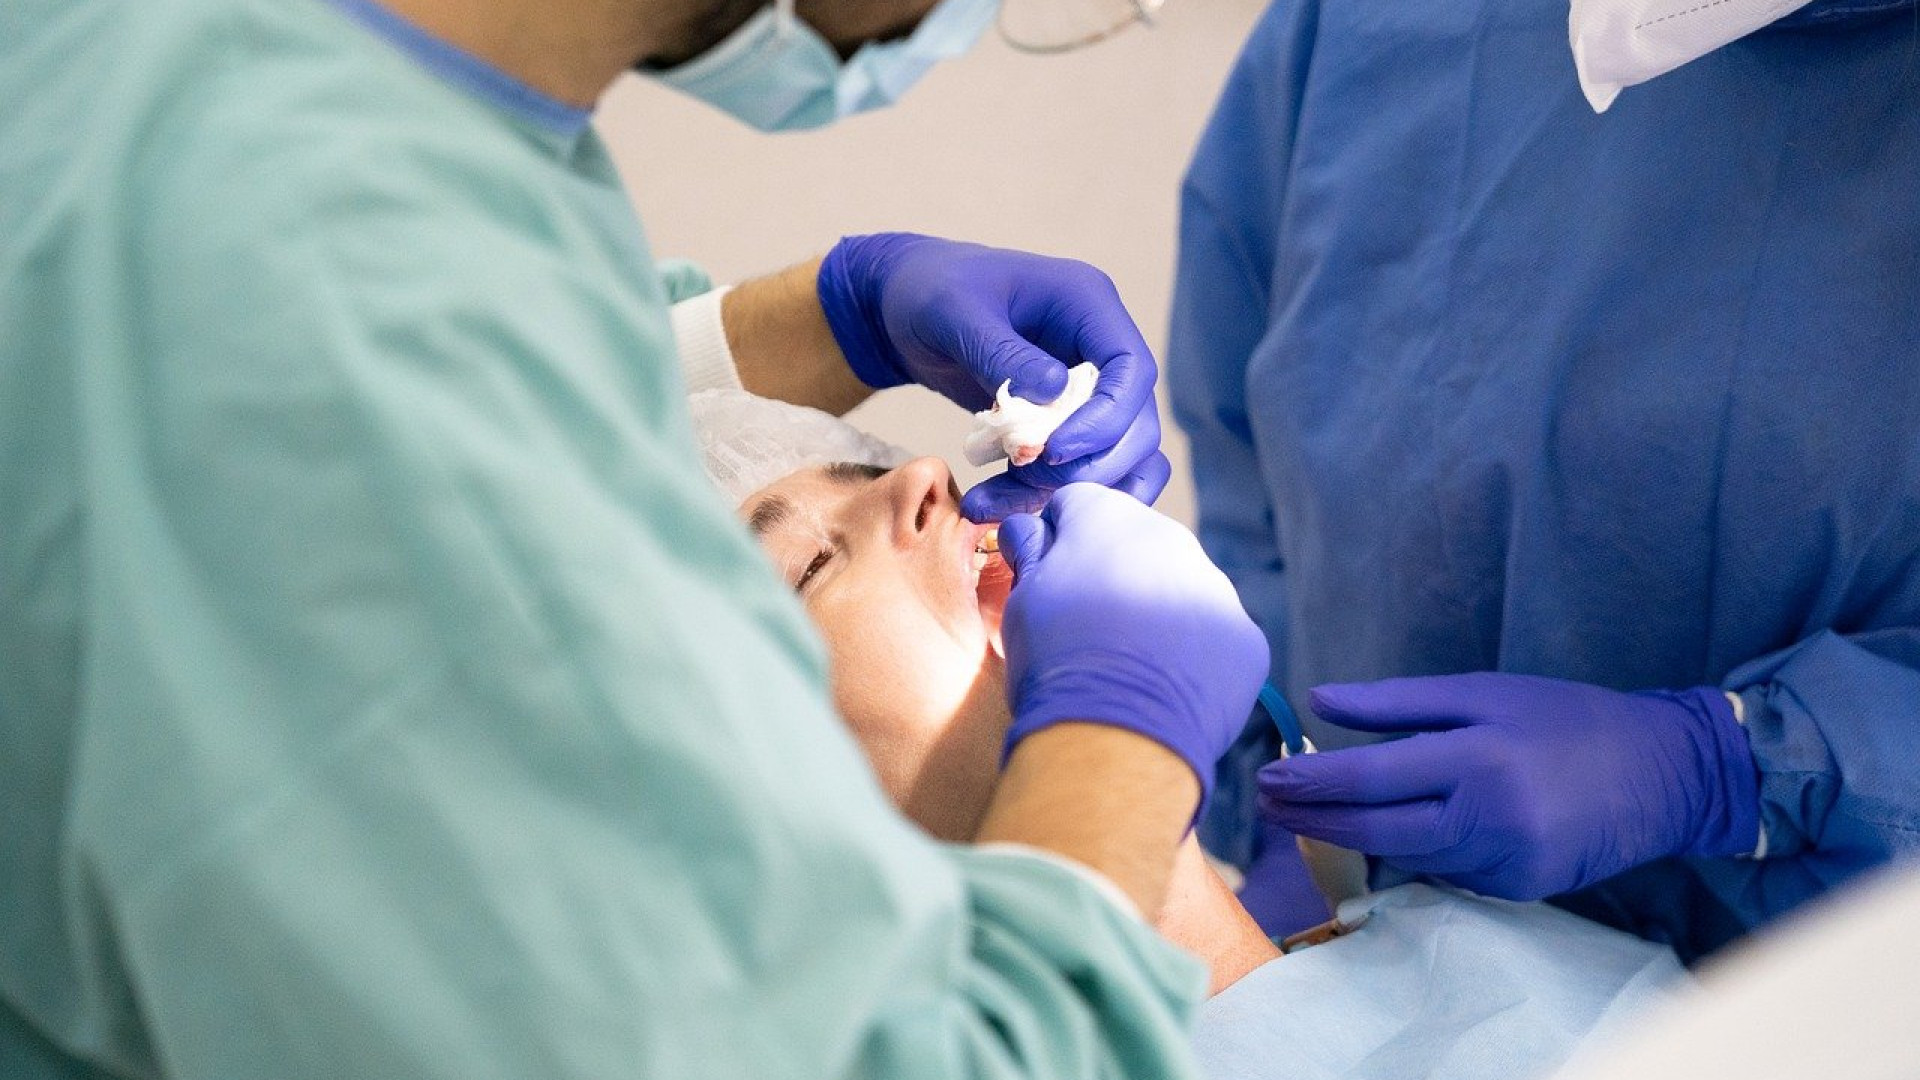 3 raisons pour lesquelles vous devriez avoir recours à l’orthodontie